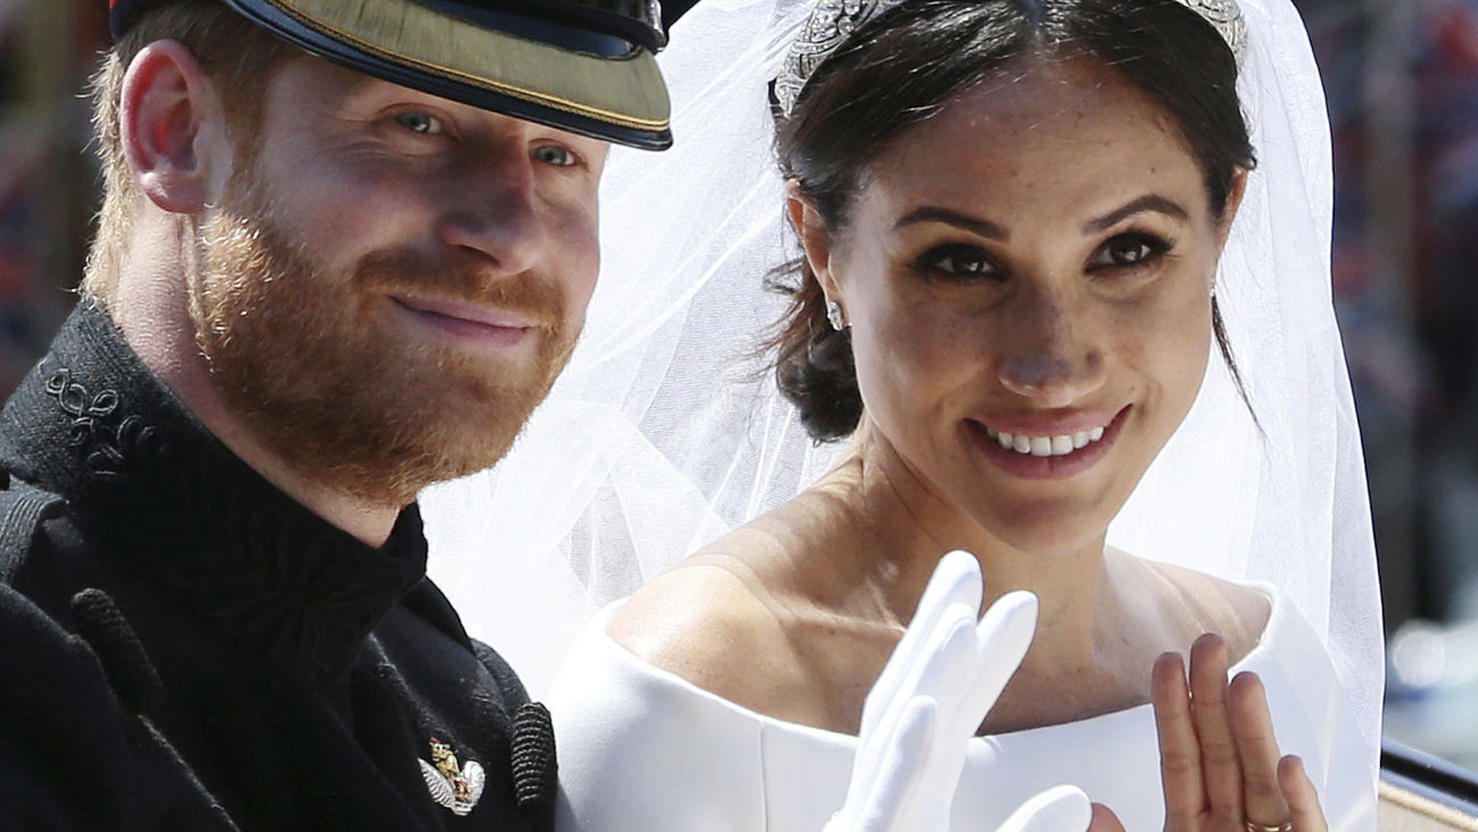 Hochzeit-Highlight 2018: Prinz Harry und Meghan Markle sagen "Ja".